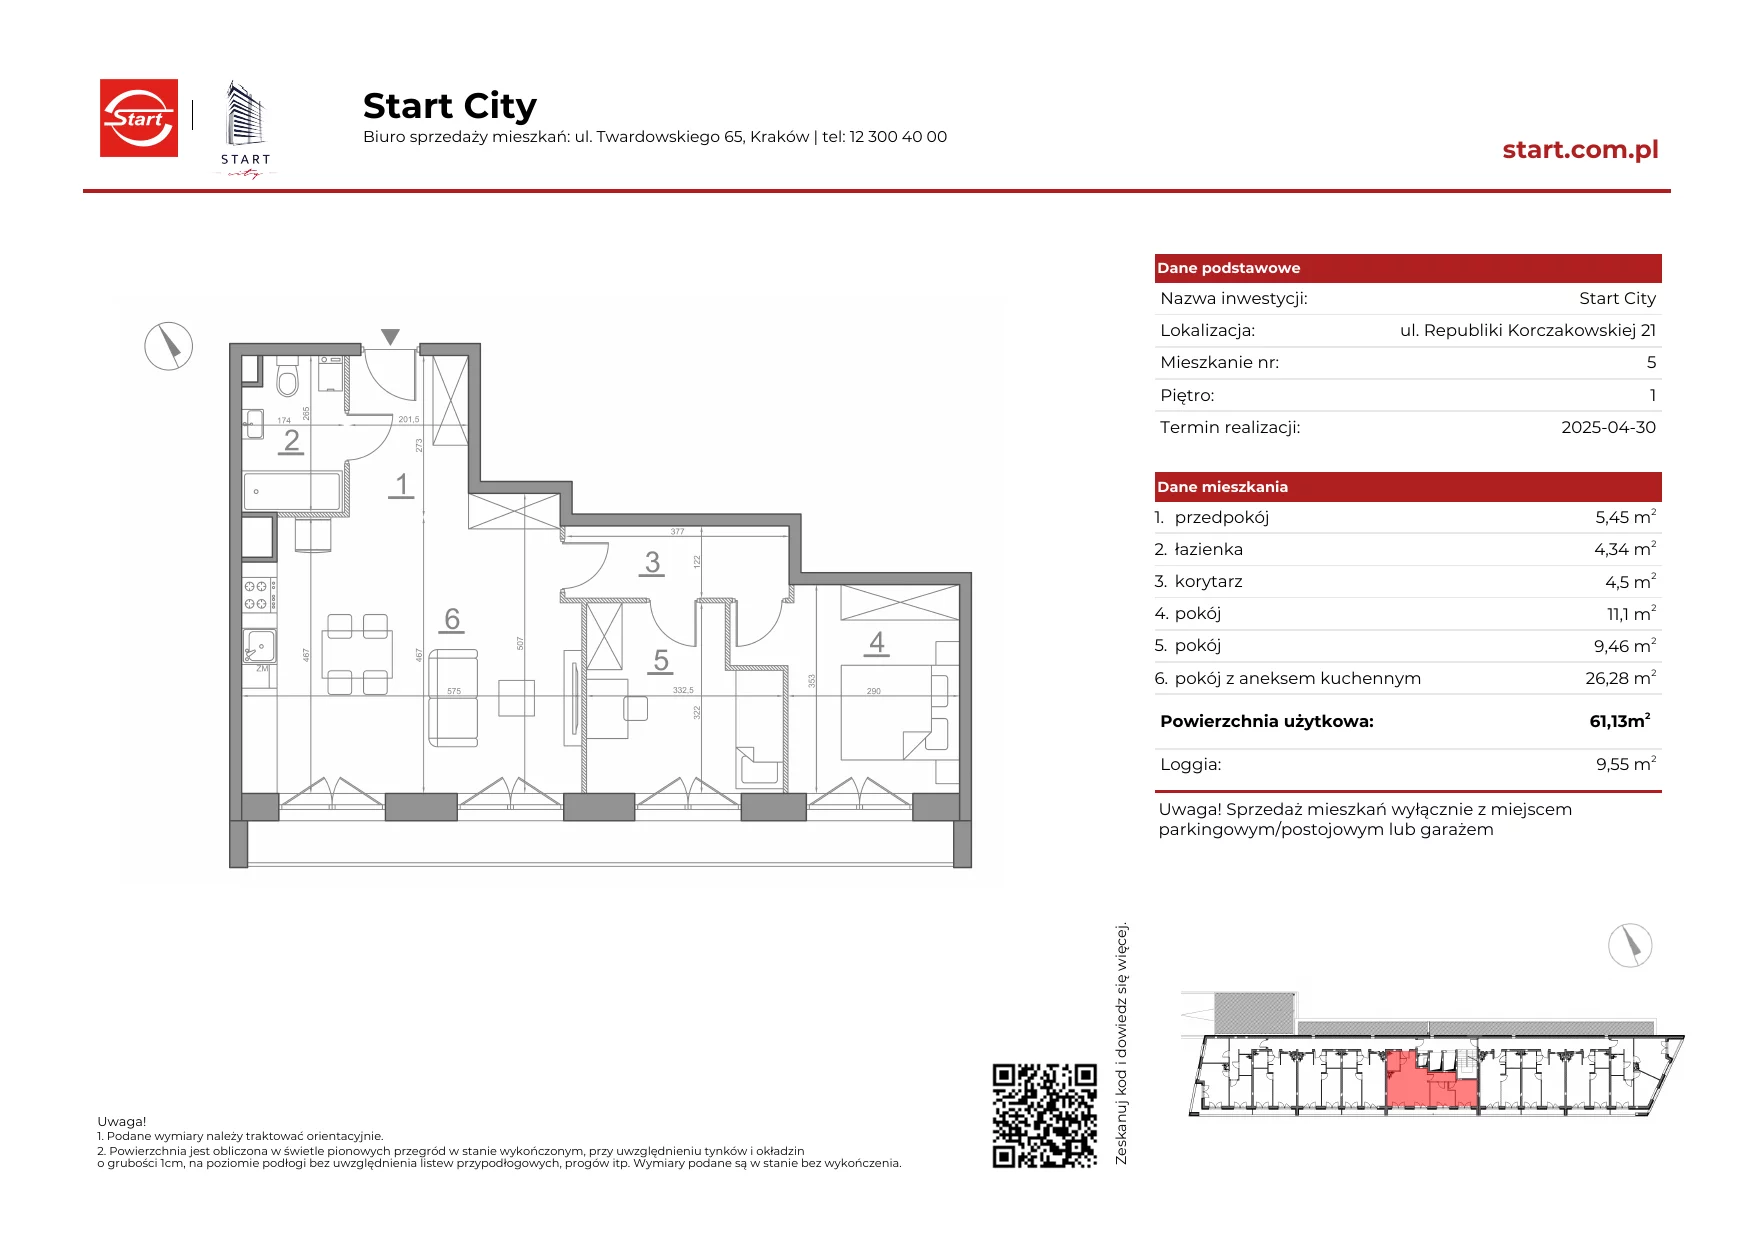 Mieszkanie 61,13 m², piętro 1, oferta nr 21/5, Start City, Kraków, Bieżanów-Prokocim, ul. Republiki Korczakowskiej 21